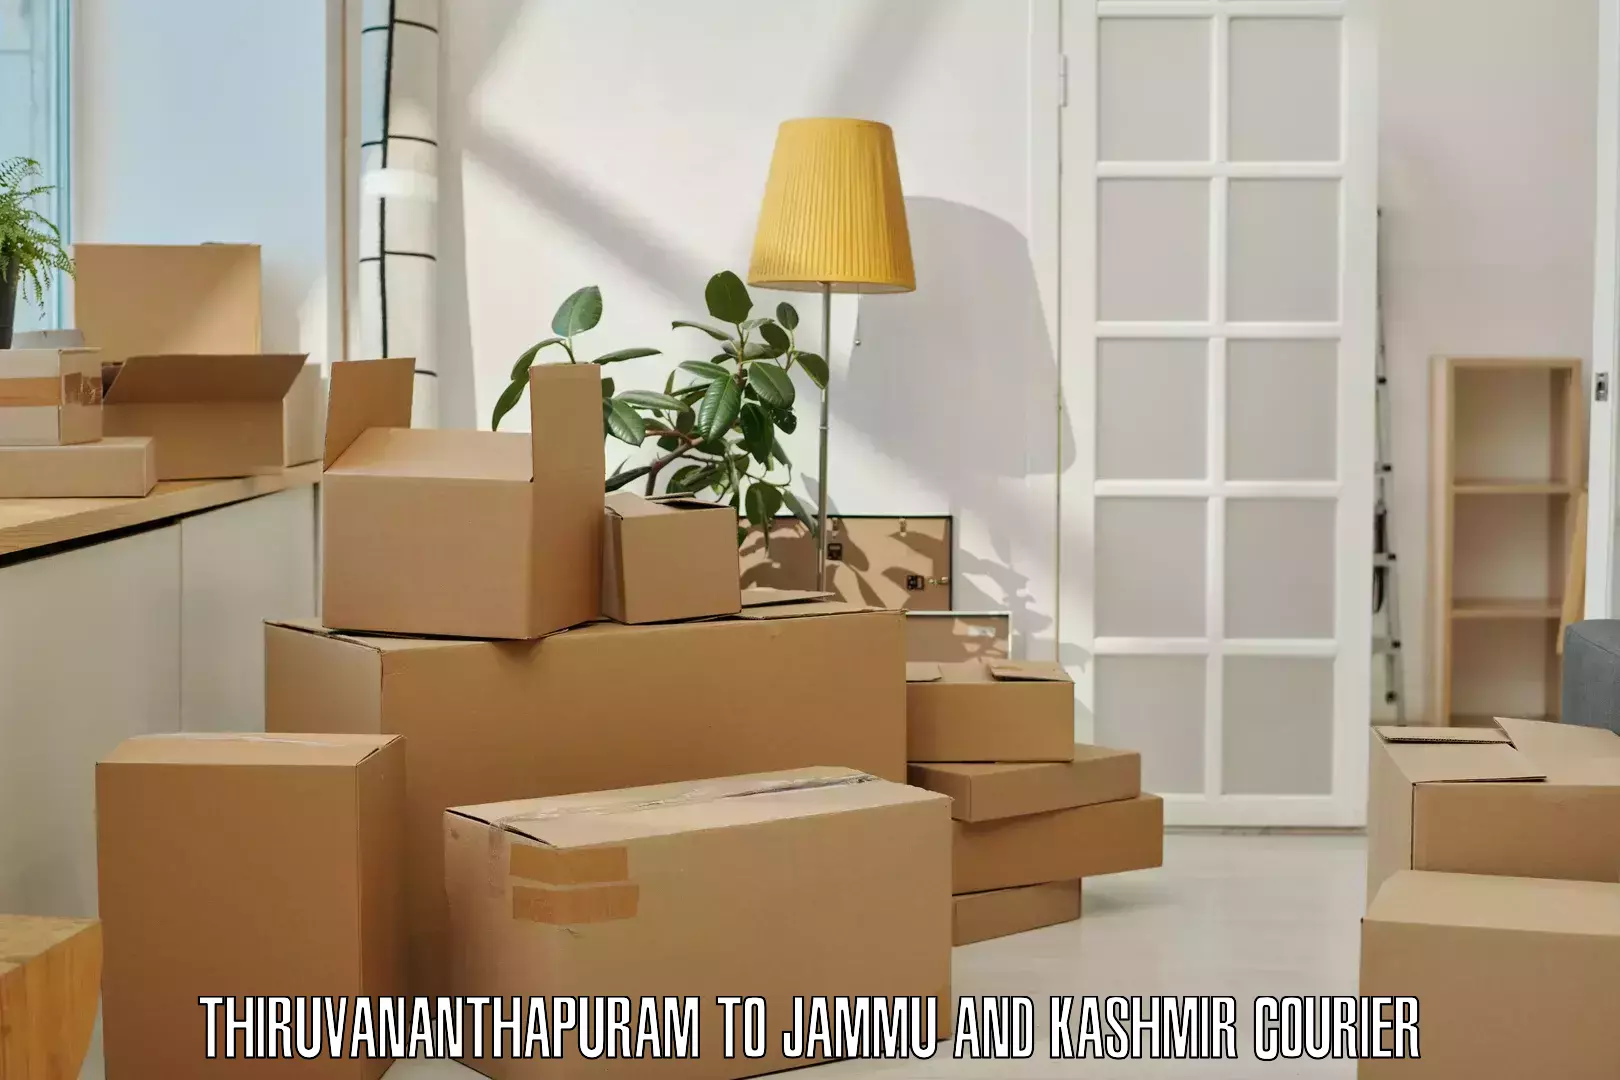 Express logistics providers Thiruvananthapuram to Sunderbani